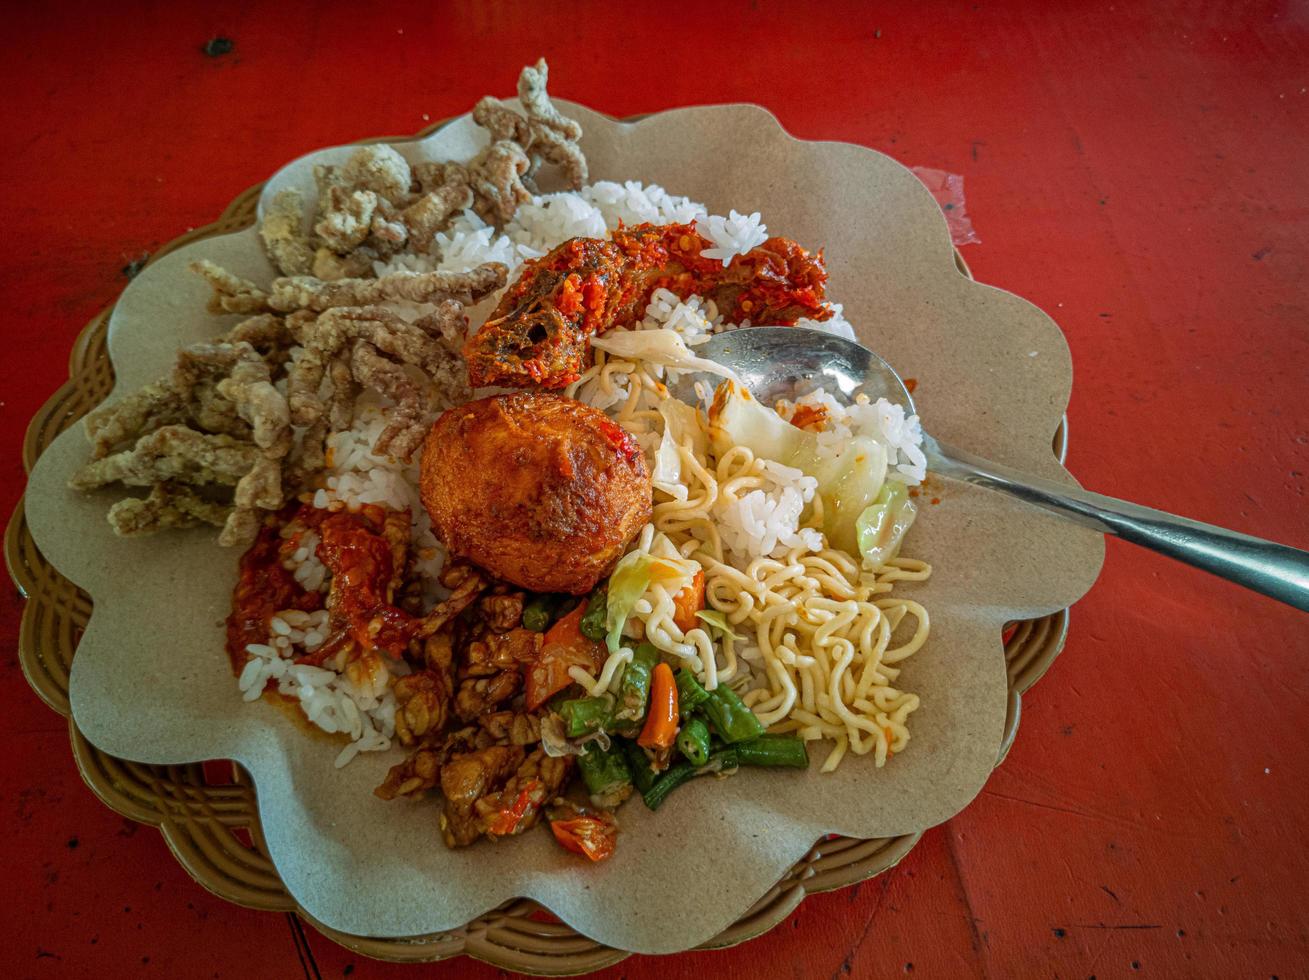 gemengd rijst. een populair Indonesisch specialiteit rijst- maaltijd met divers kant gerechten geserveerd met rijst- en anderen net zo optioneel toevoegingen. foto